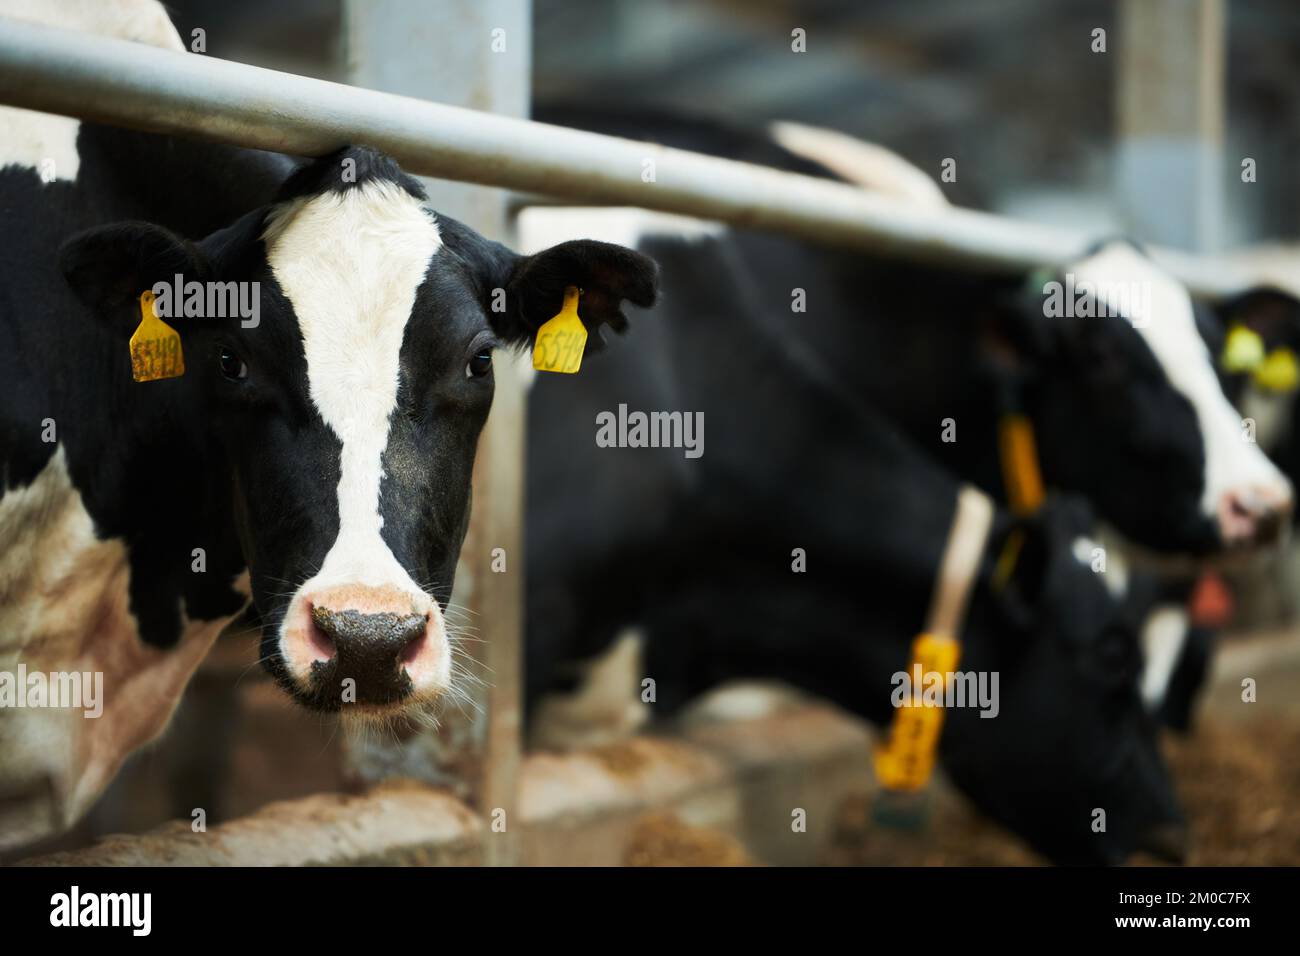 Vacca da latte in bianco e nero che guarda la macchina fotografica mentre si trova in vacchetta contro altri animali che mangiano cibo dall'alimentatore Foto Stock